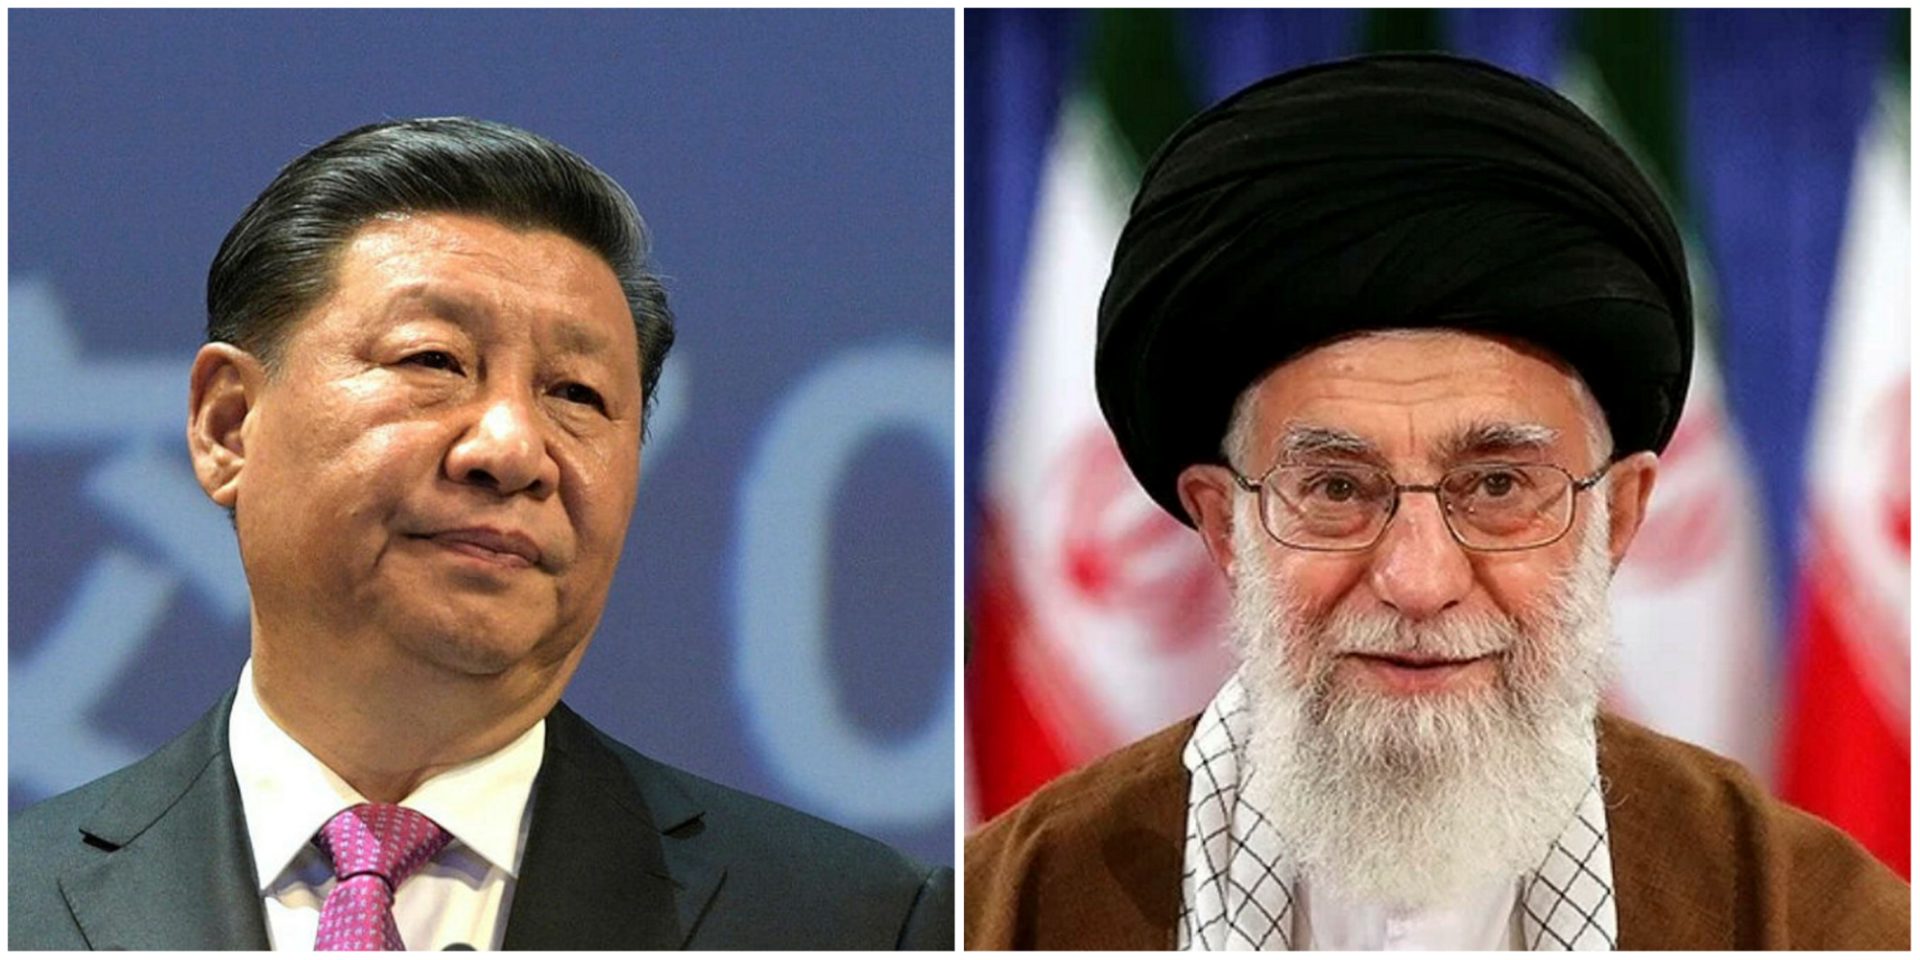 China's Xi Jinping and Iran's Ali Khamenei 

Wikimedia Commons